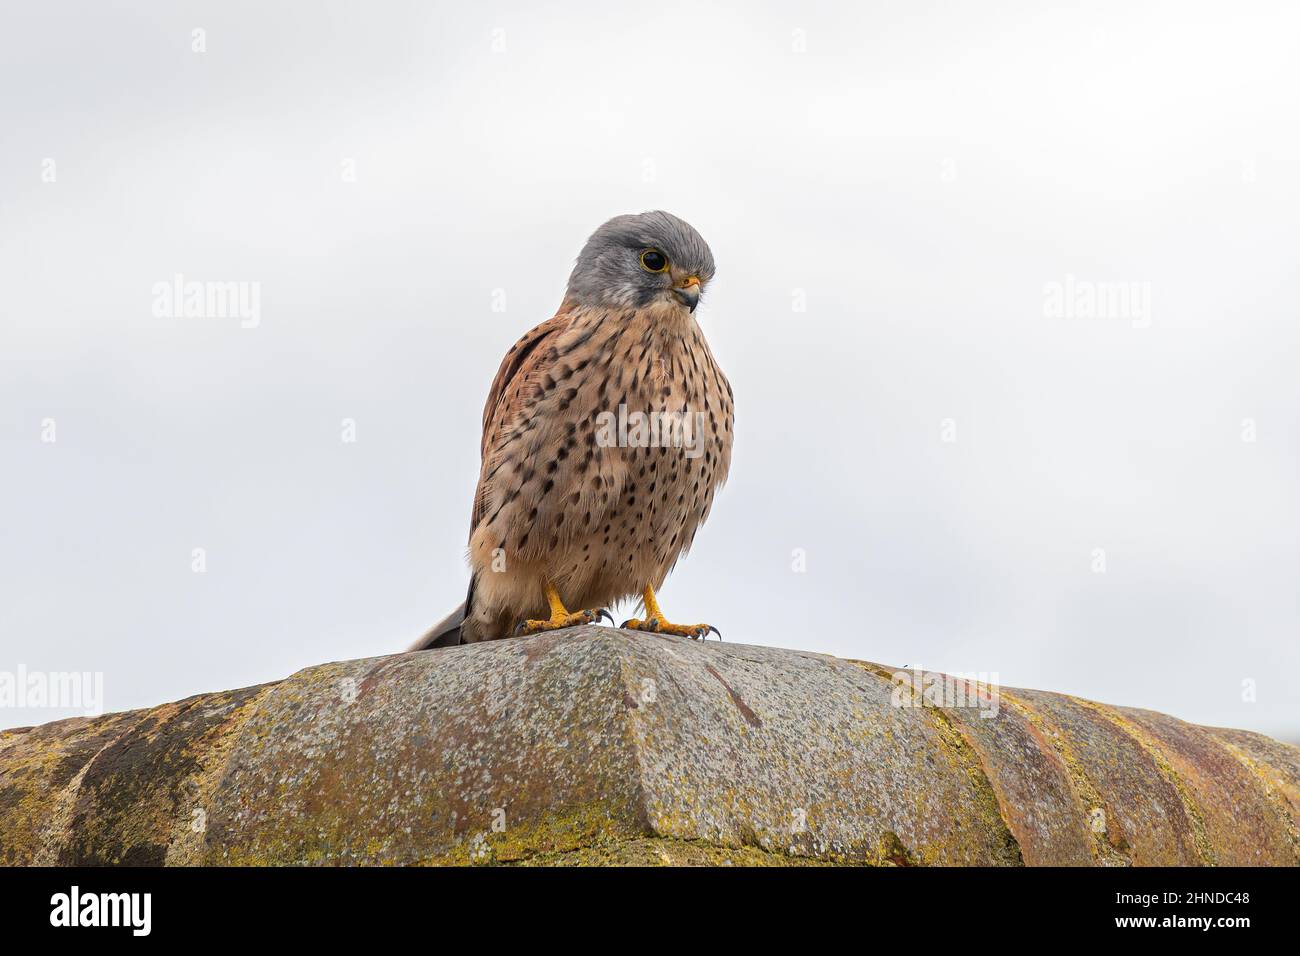 Kestrel (Falco tinnunculus), oiseau mâle perché sur un mur, Angleterre, Royaume-Uni. Faune urbaine. Banque D'Images